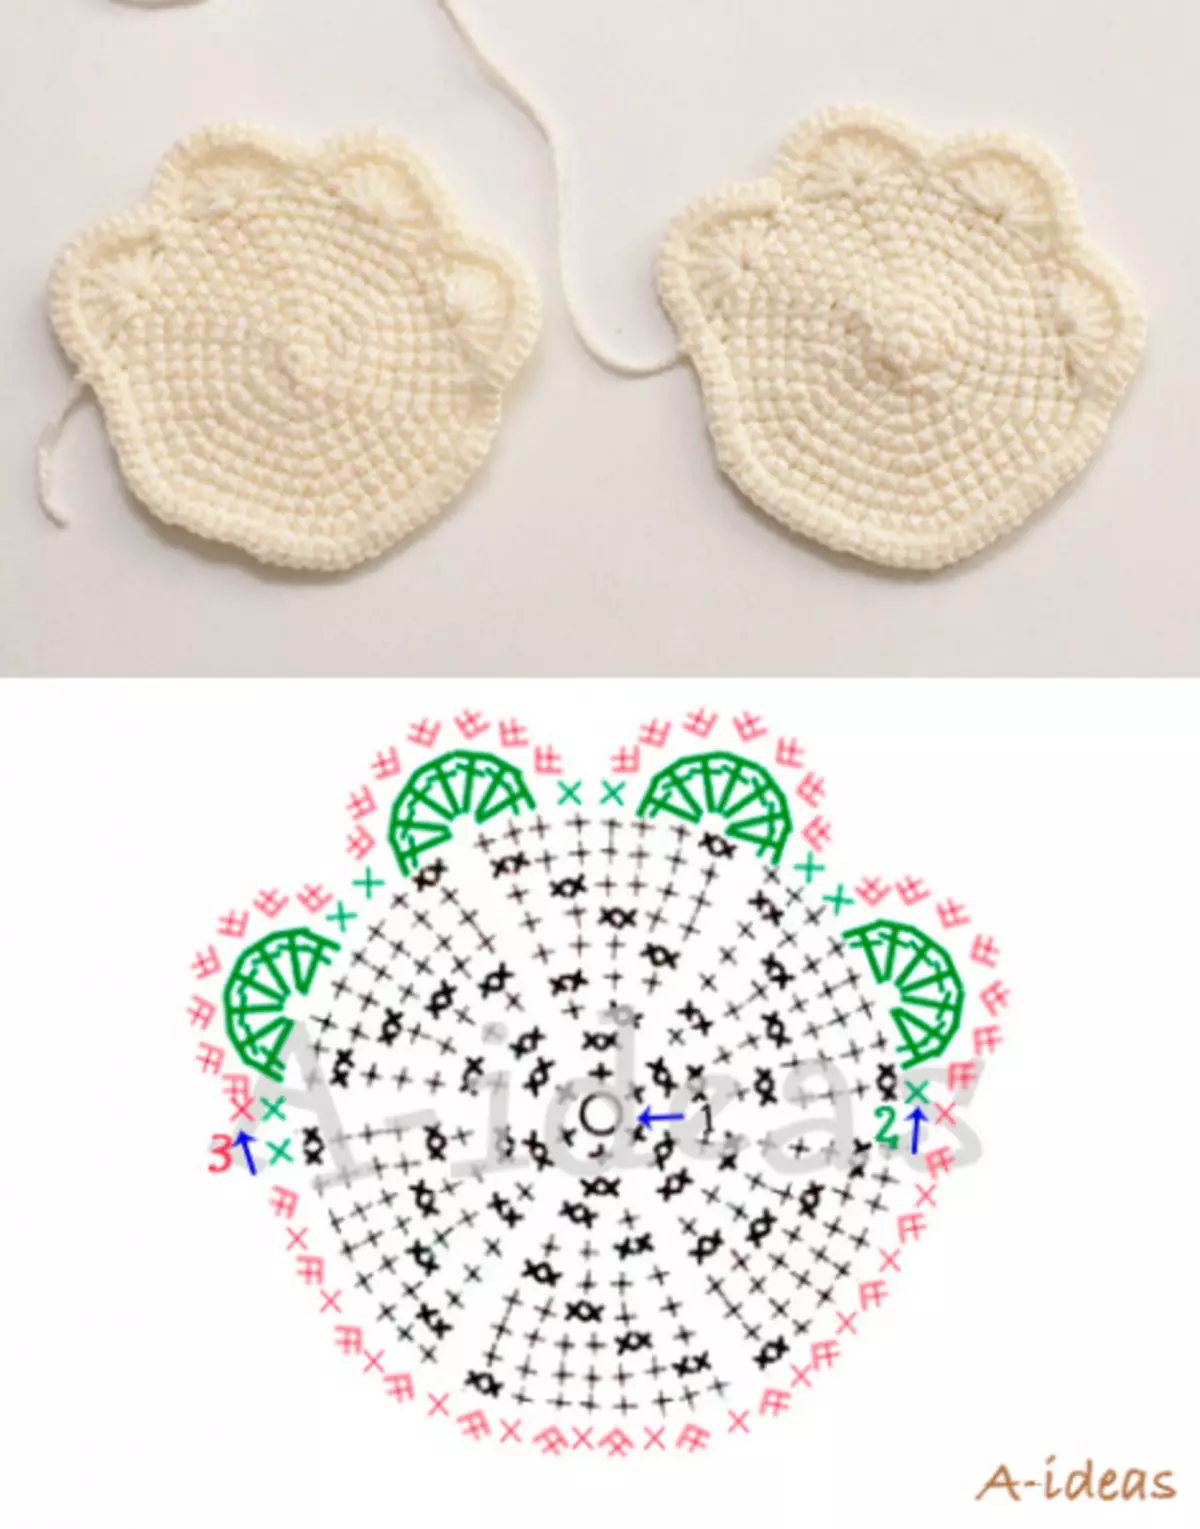 Tunic Crochet: Skema lan katrangan babagan fillet rajutan karo foto